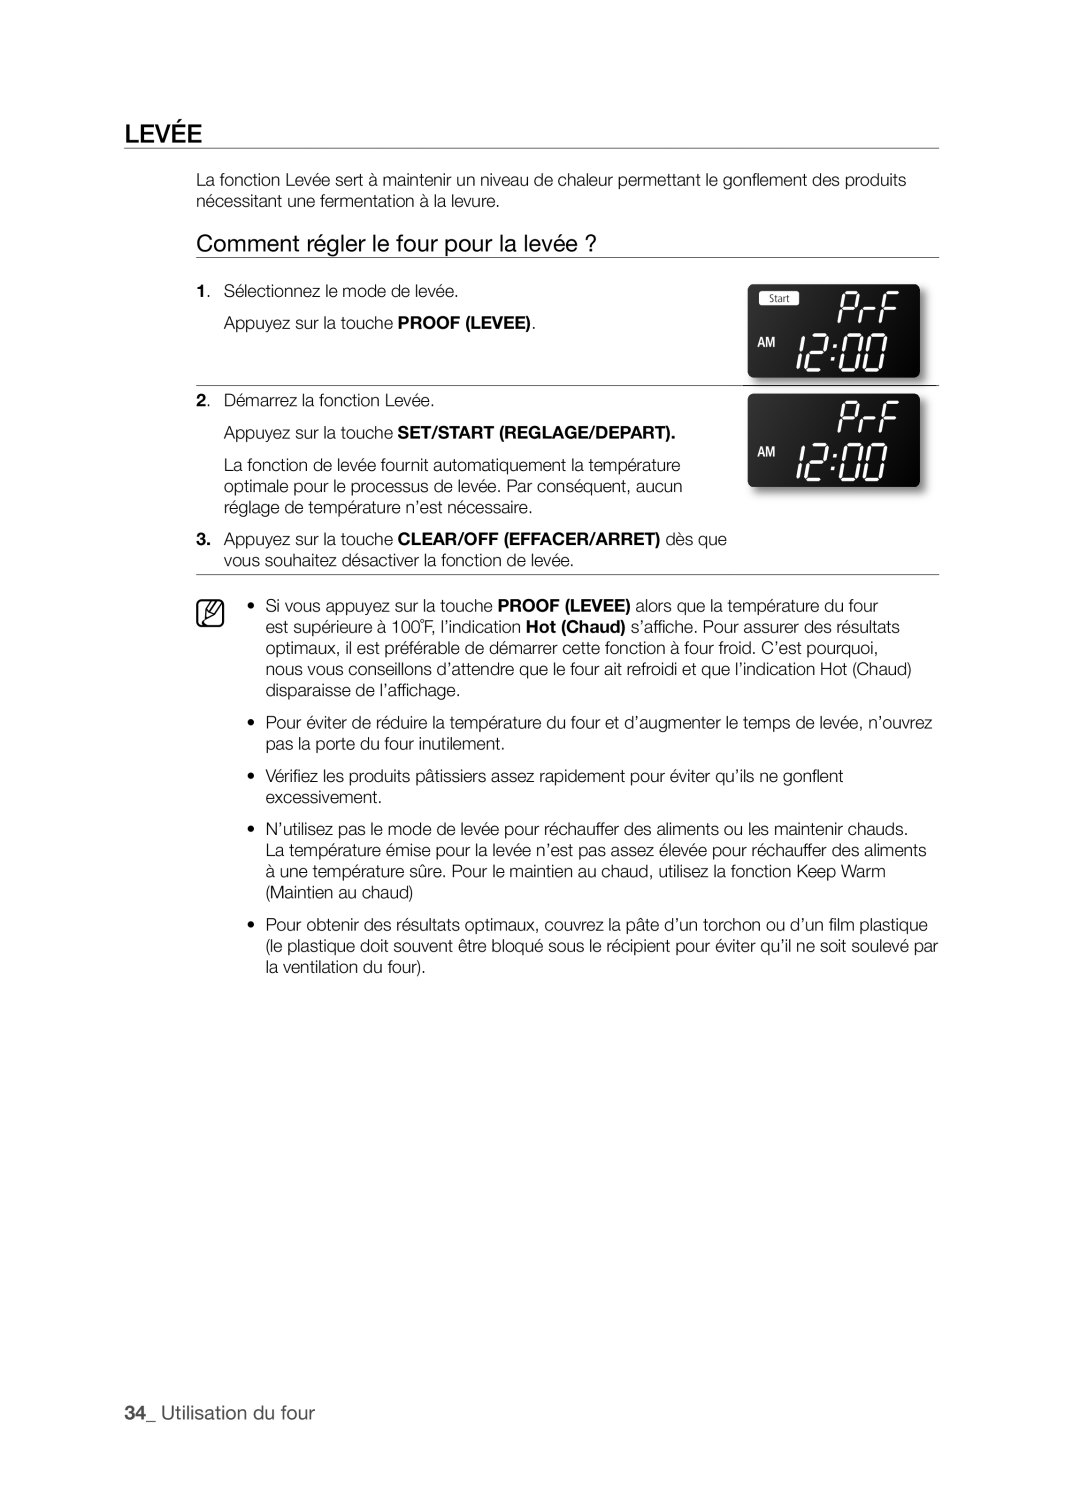 Samsung FTQ352IWX user manual LEVéE, Comment régler le four pour la levée ?, _ Utilisation du four 